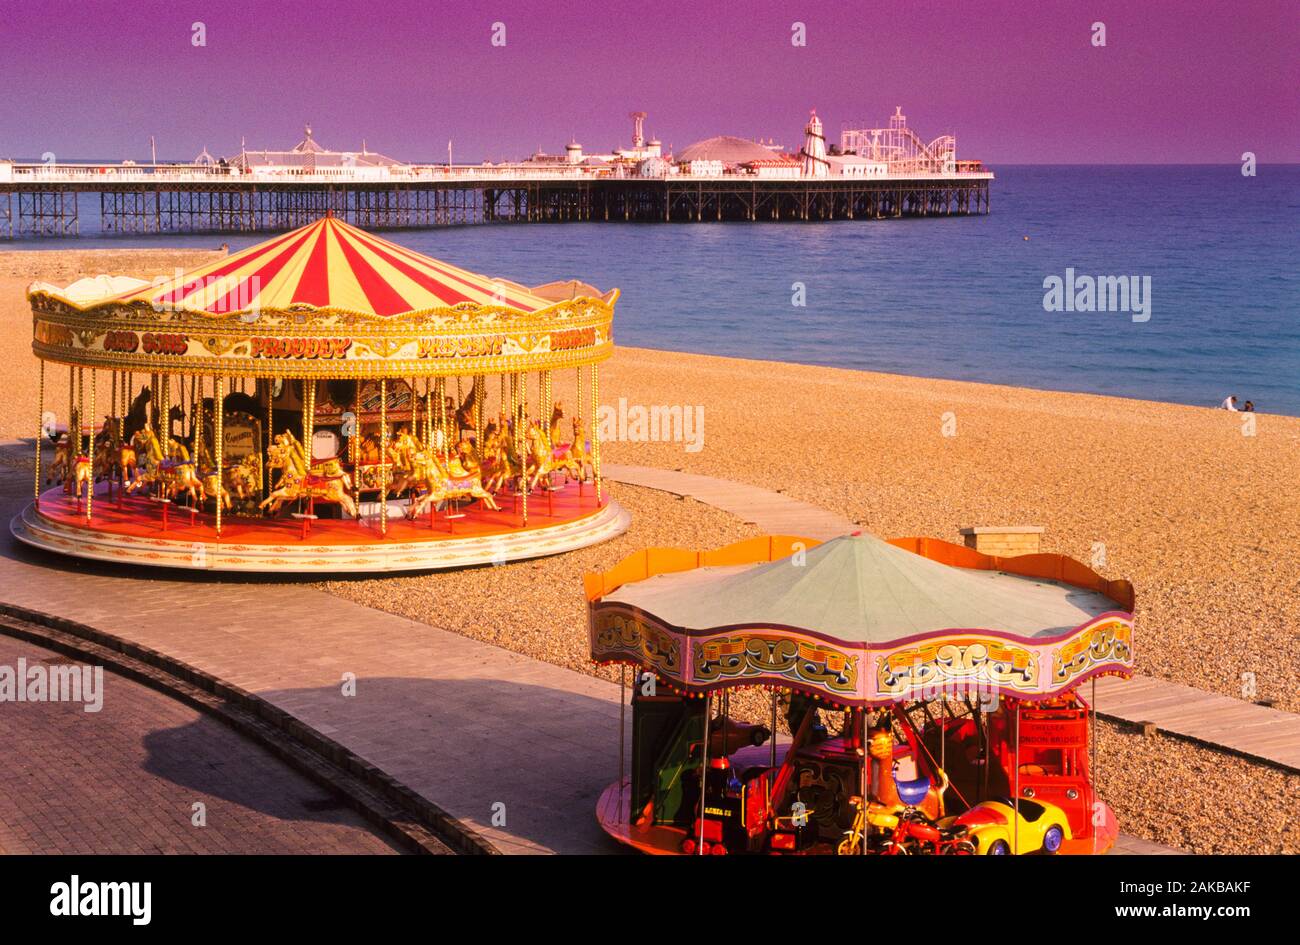 Blick auf karussells am Strand, Brighton, England, Großbritannien Stockfoto